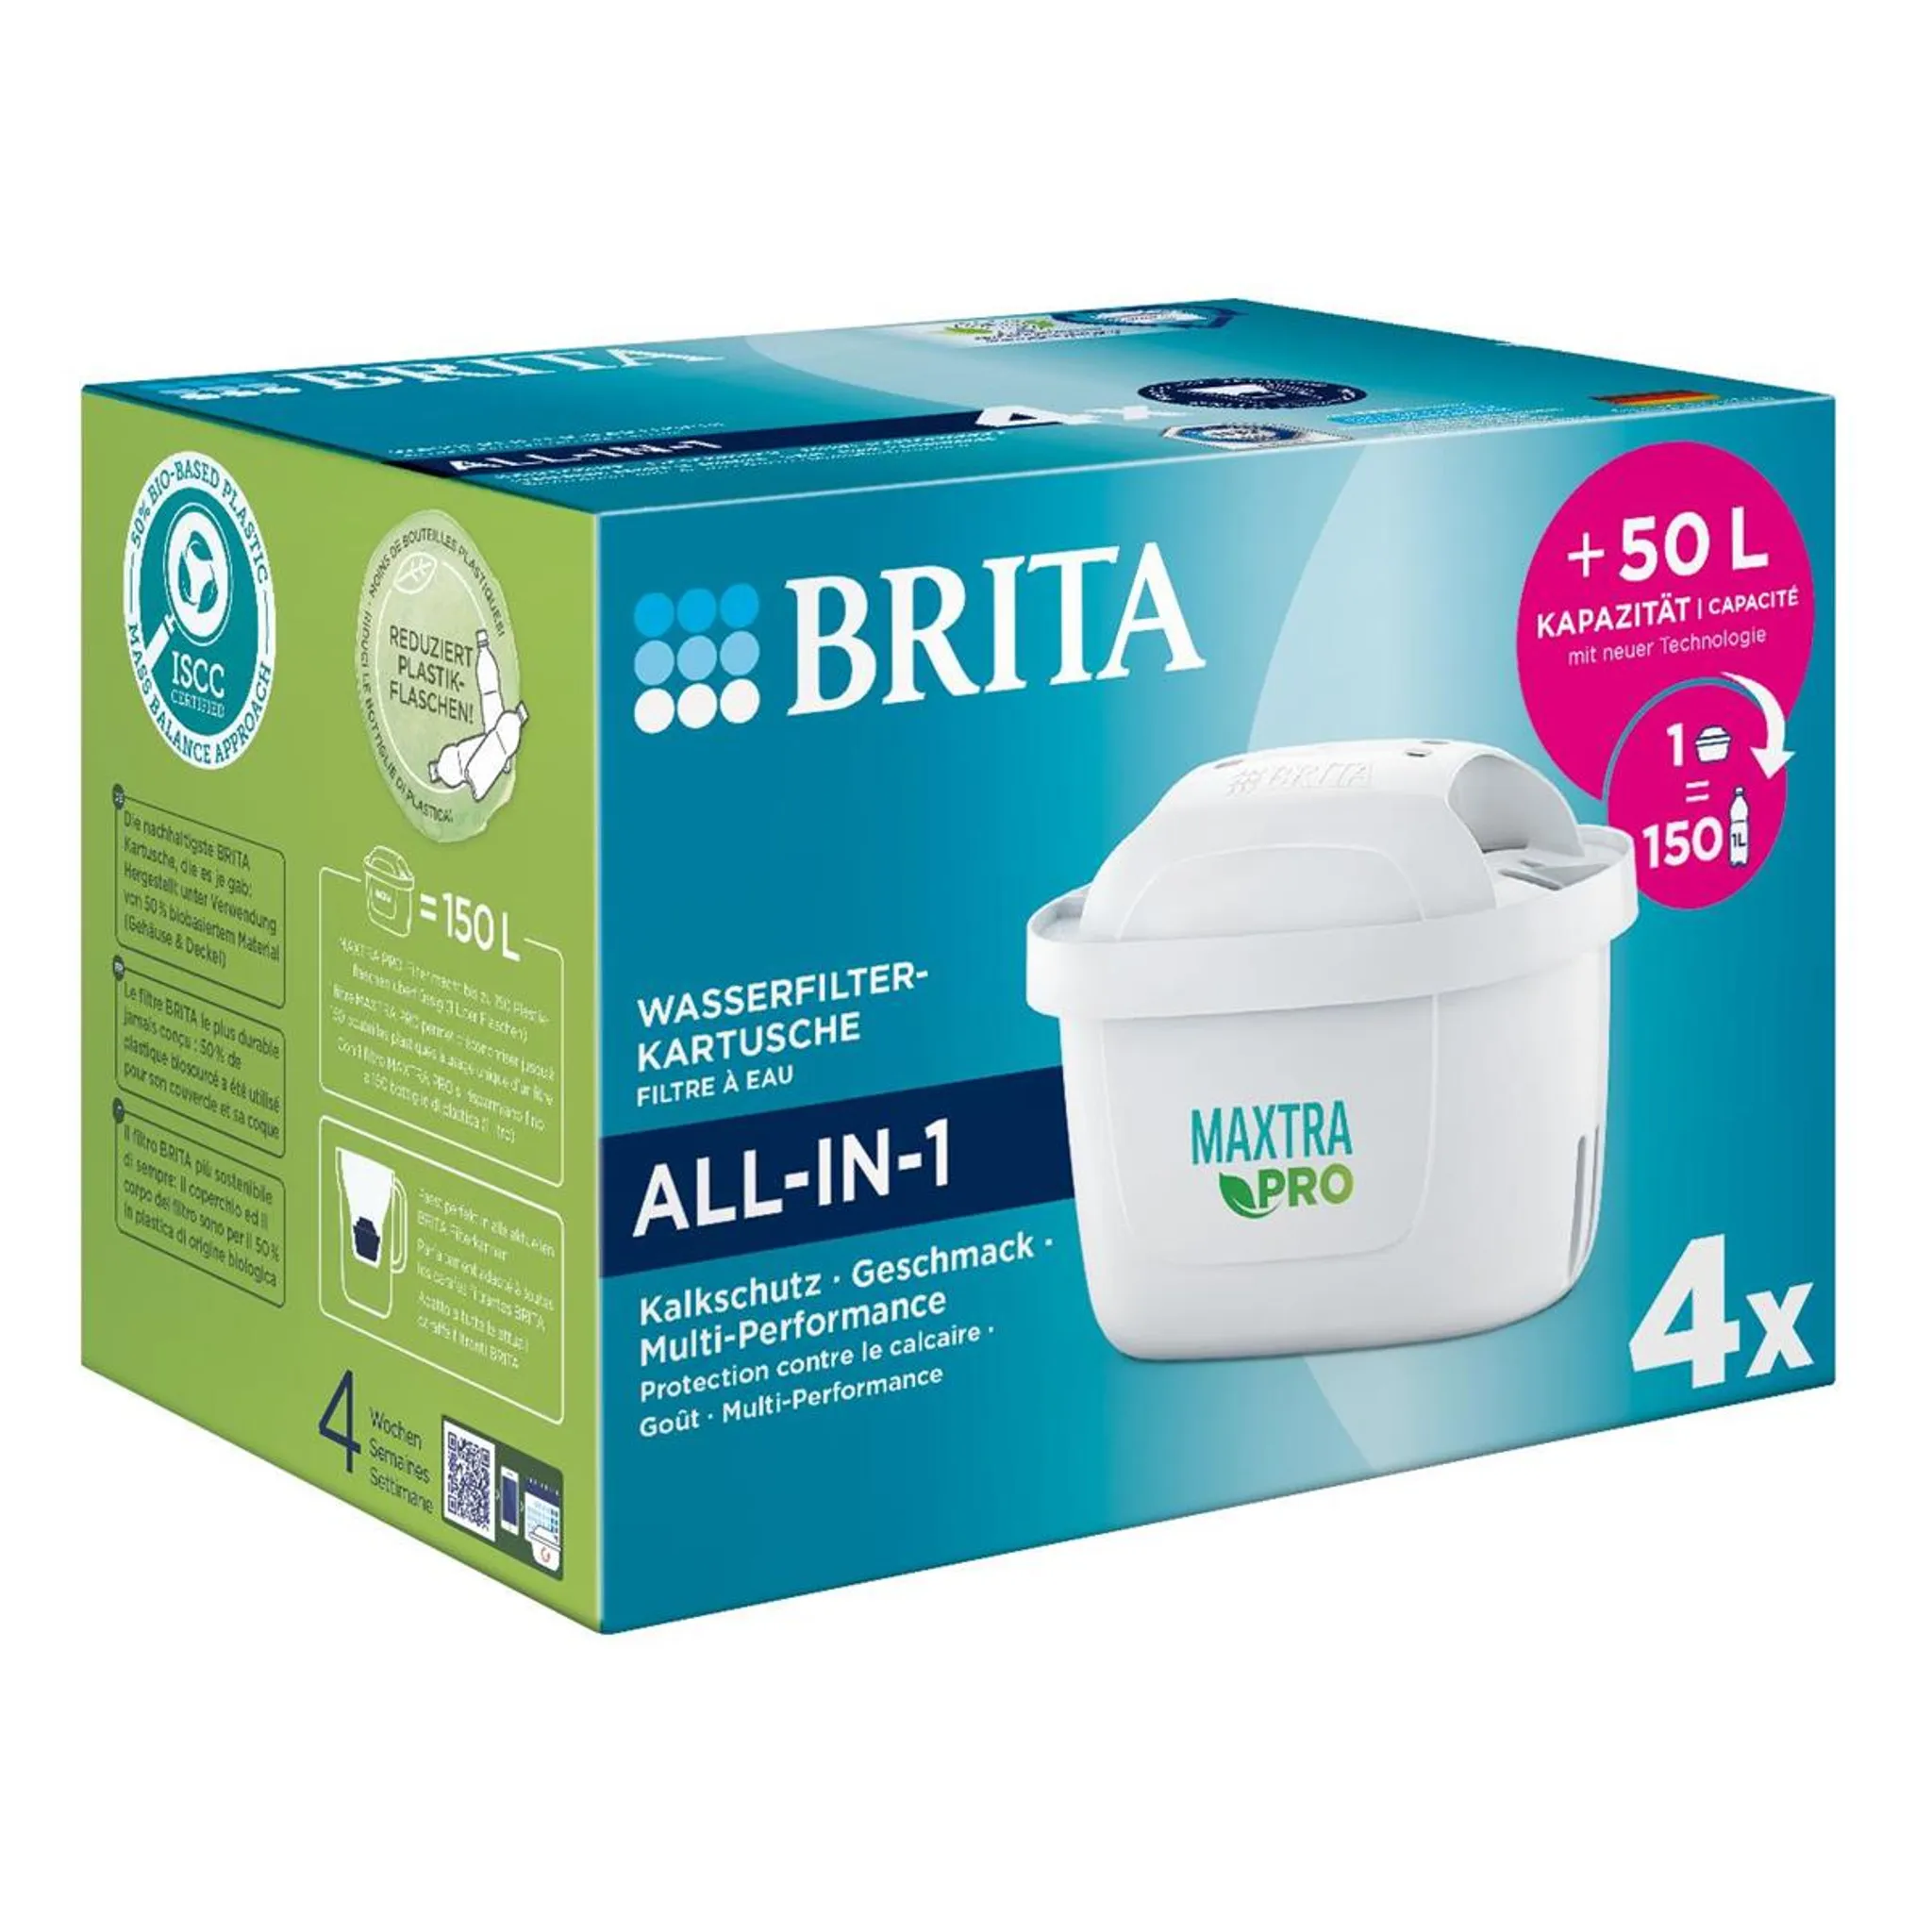 Pack) Brita ALL-IN-1 Wasserfilter-Kartusche 4er - Pro (1er Maxtra Filterwasser